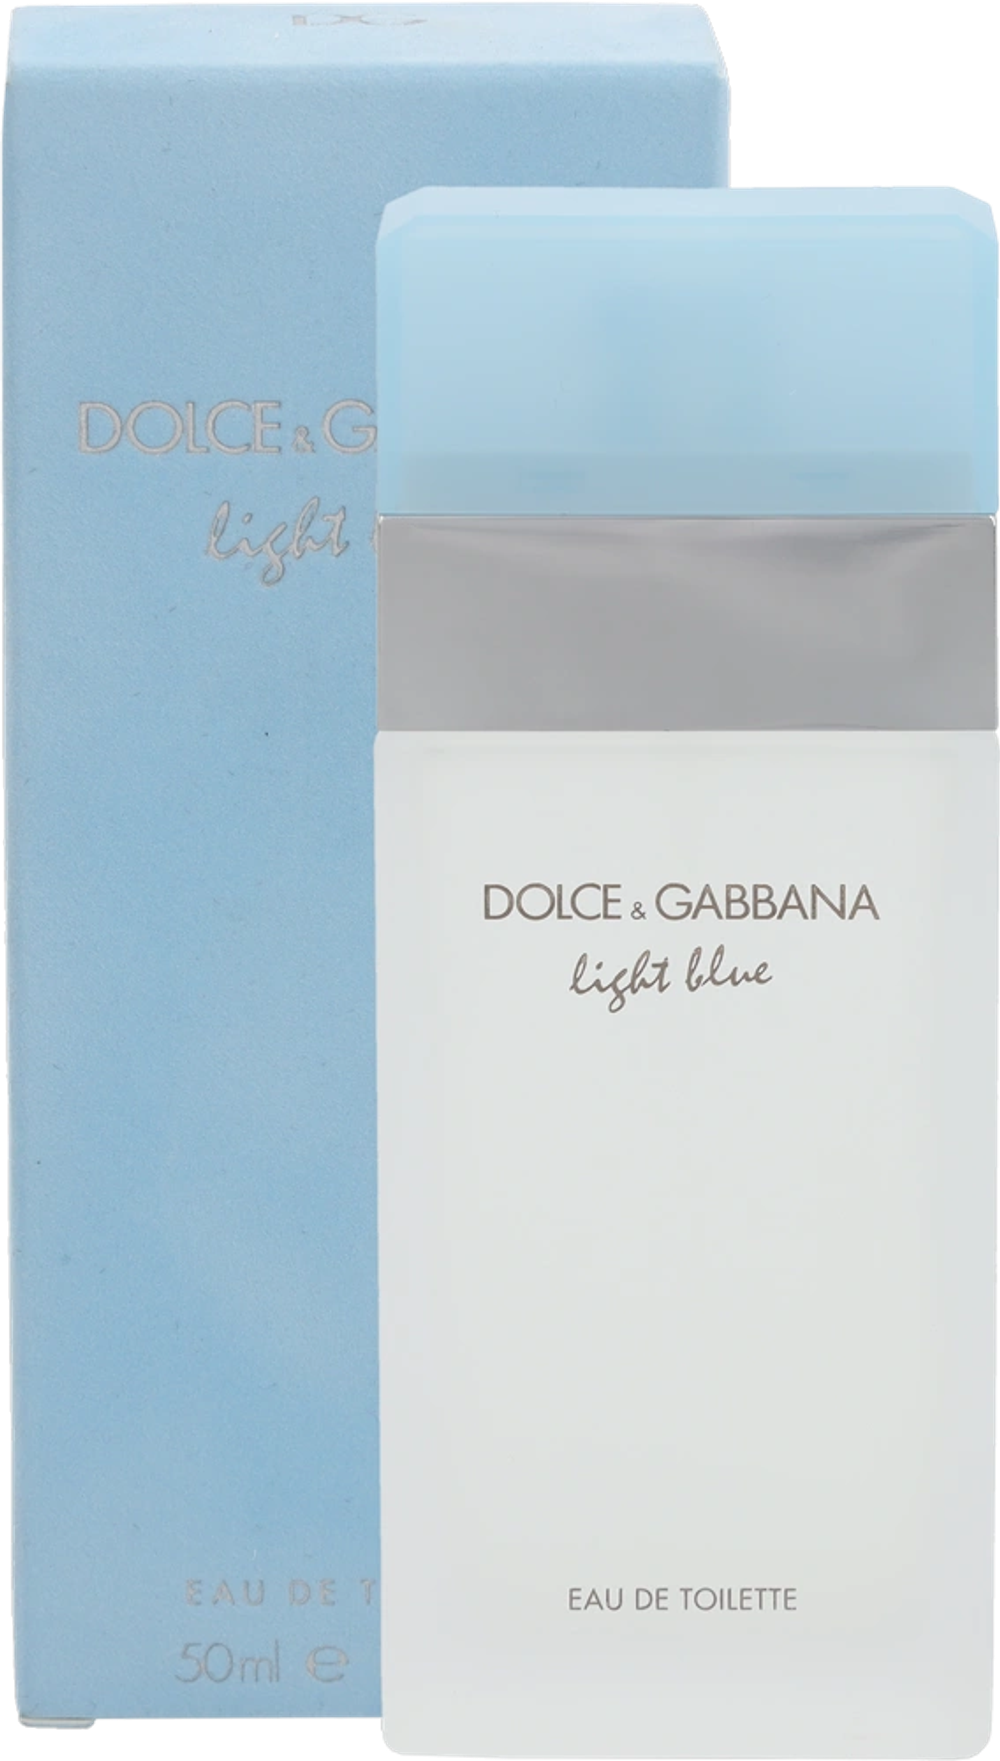 Deals on D&G Light Blue Pour Femme from Fleggaard at 349 kr.